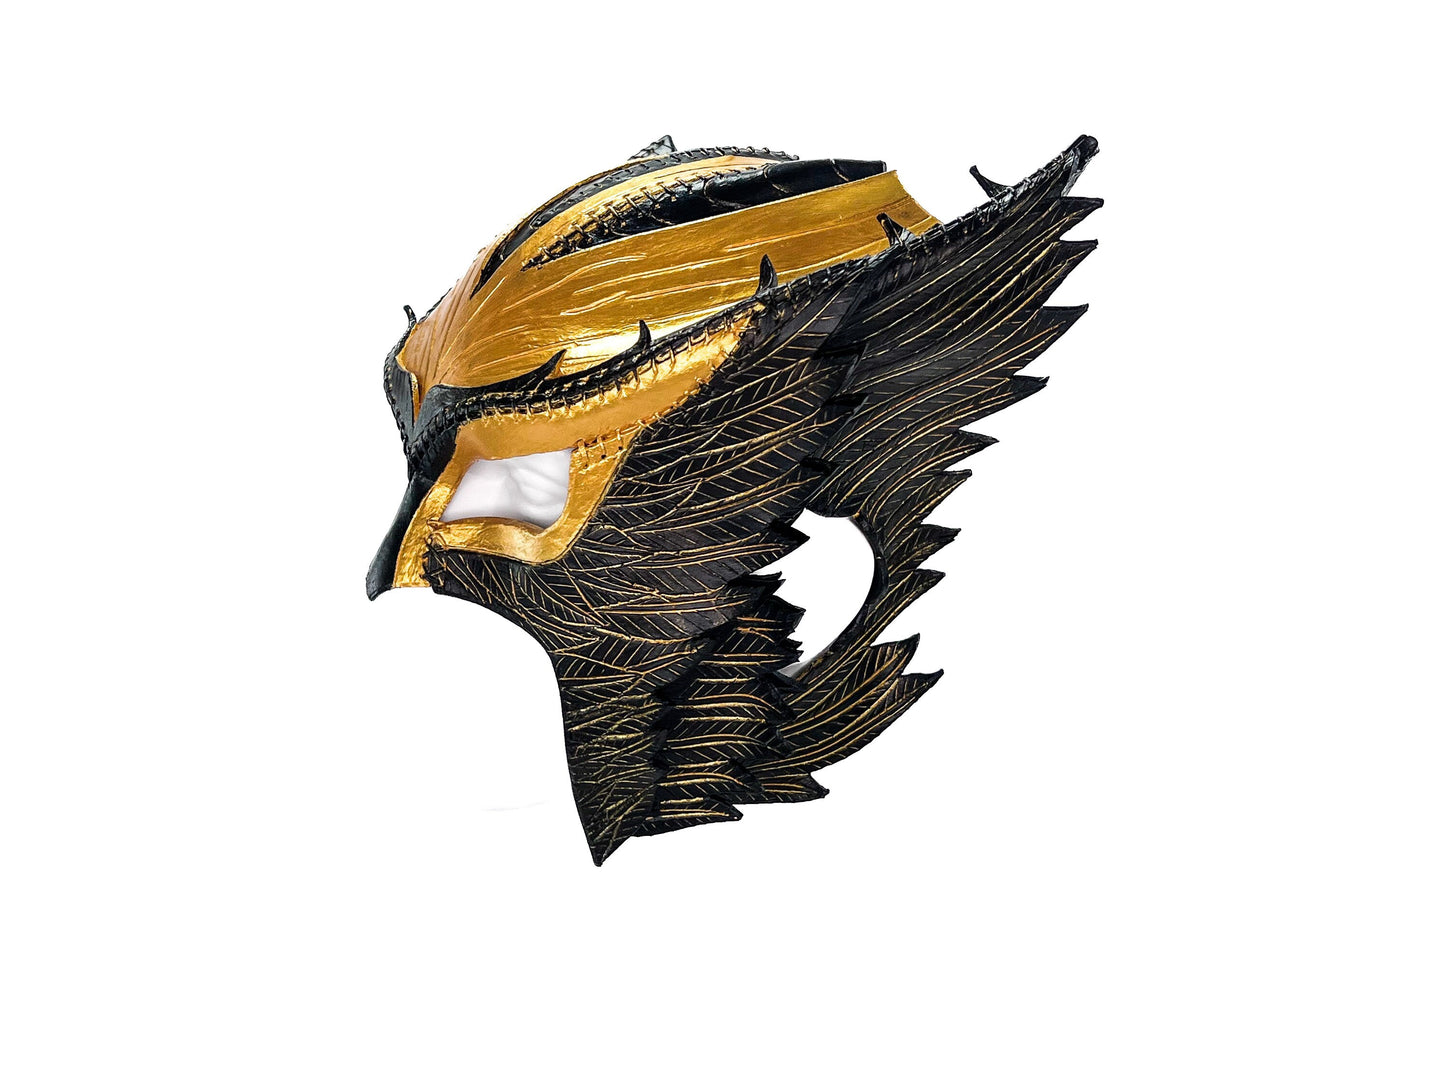 Winged Helmet Genuine Leather Mask